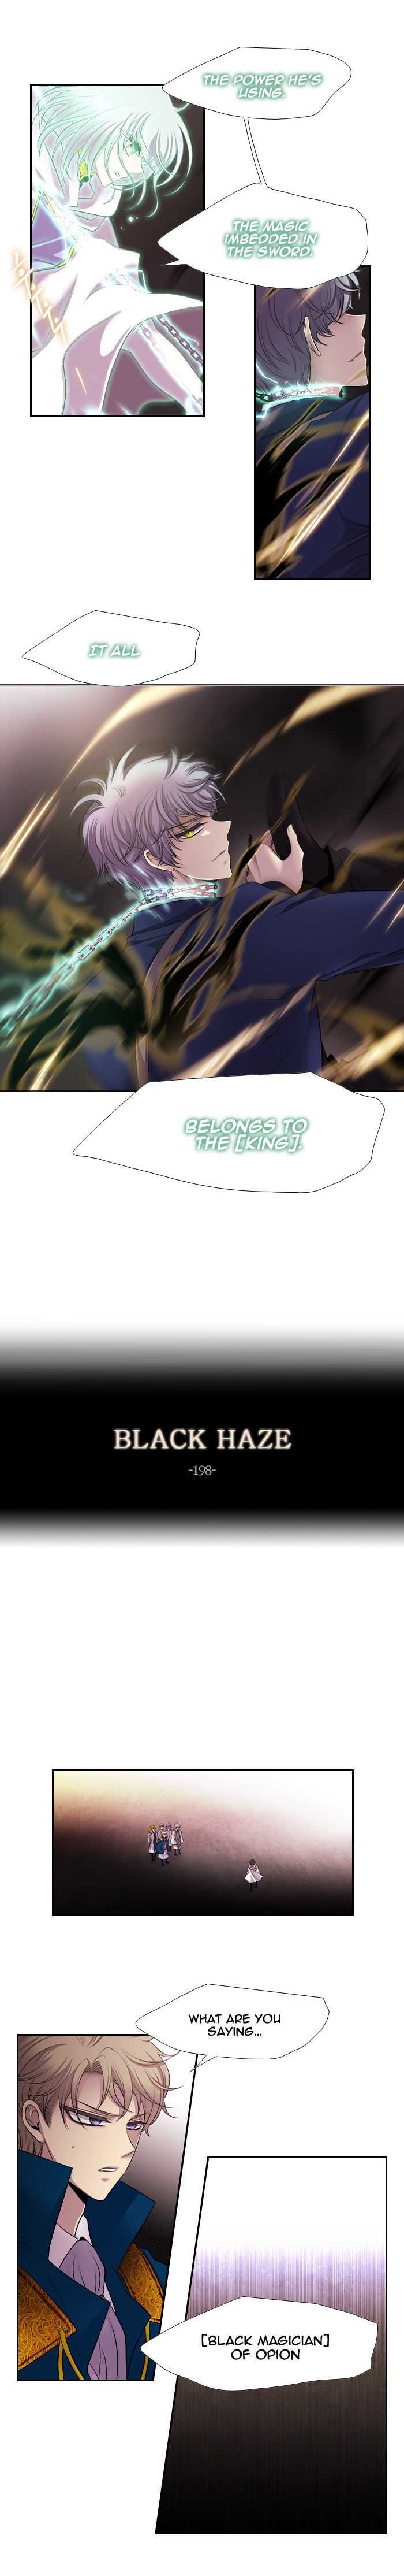 Black Haze 198 4